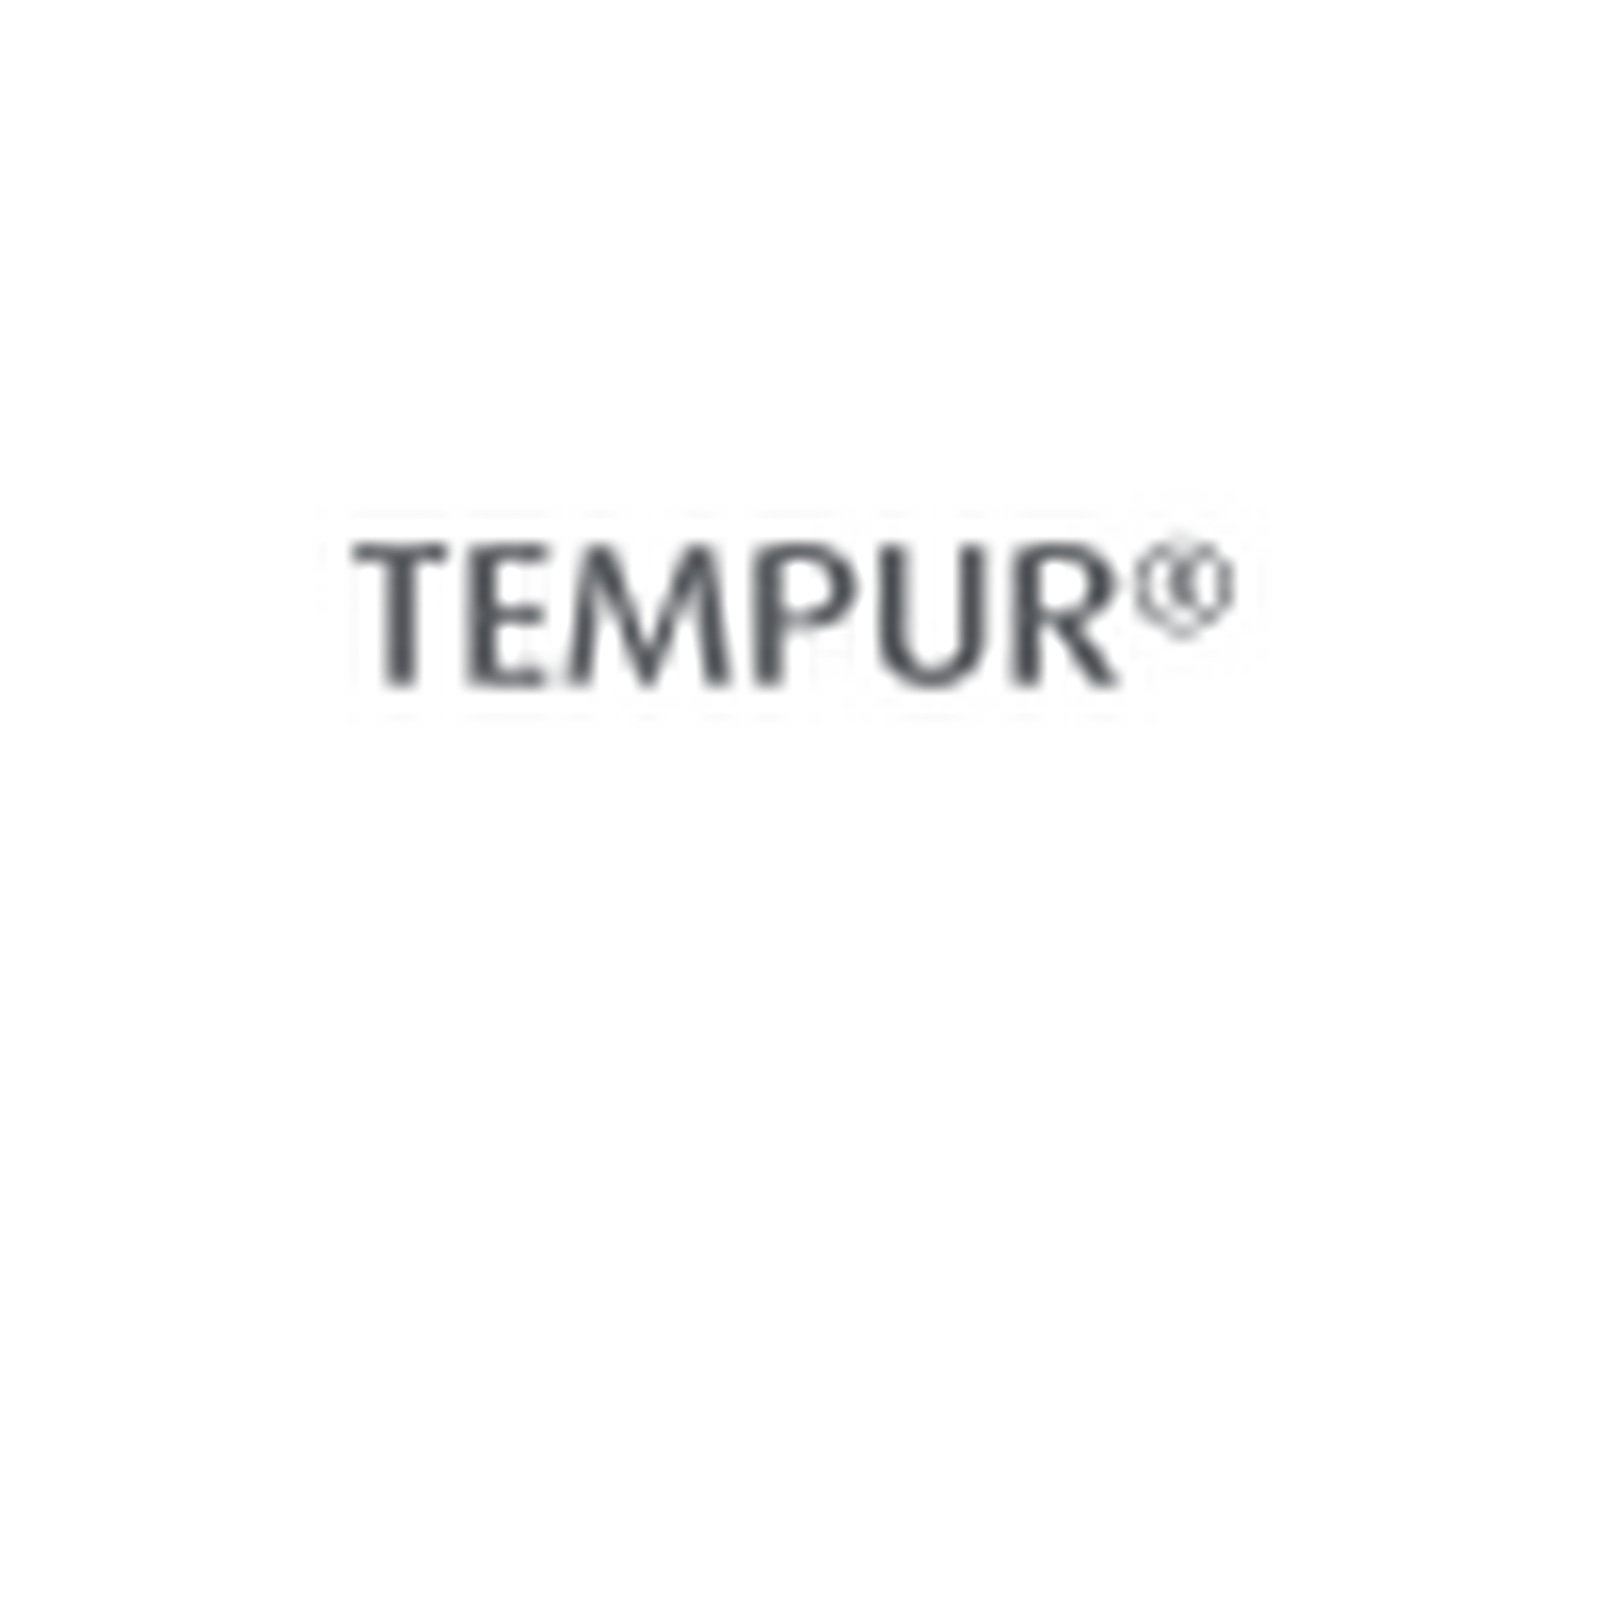 Tempur Material